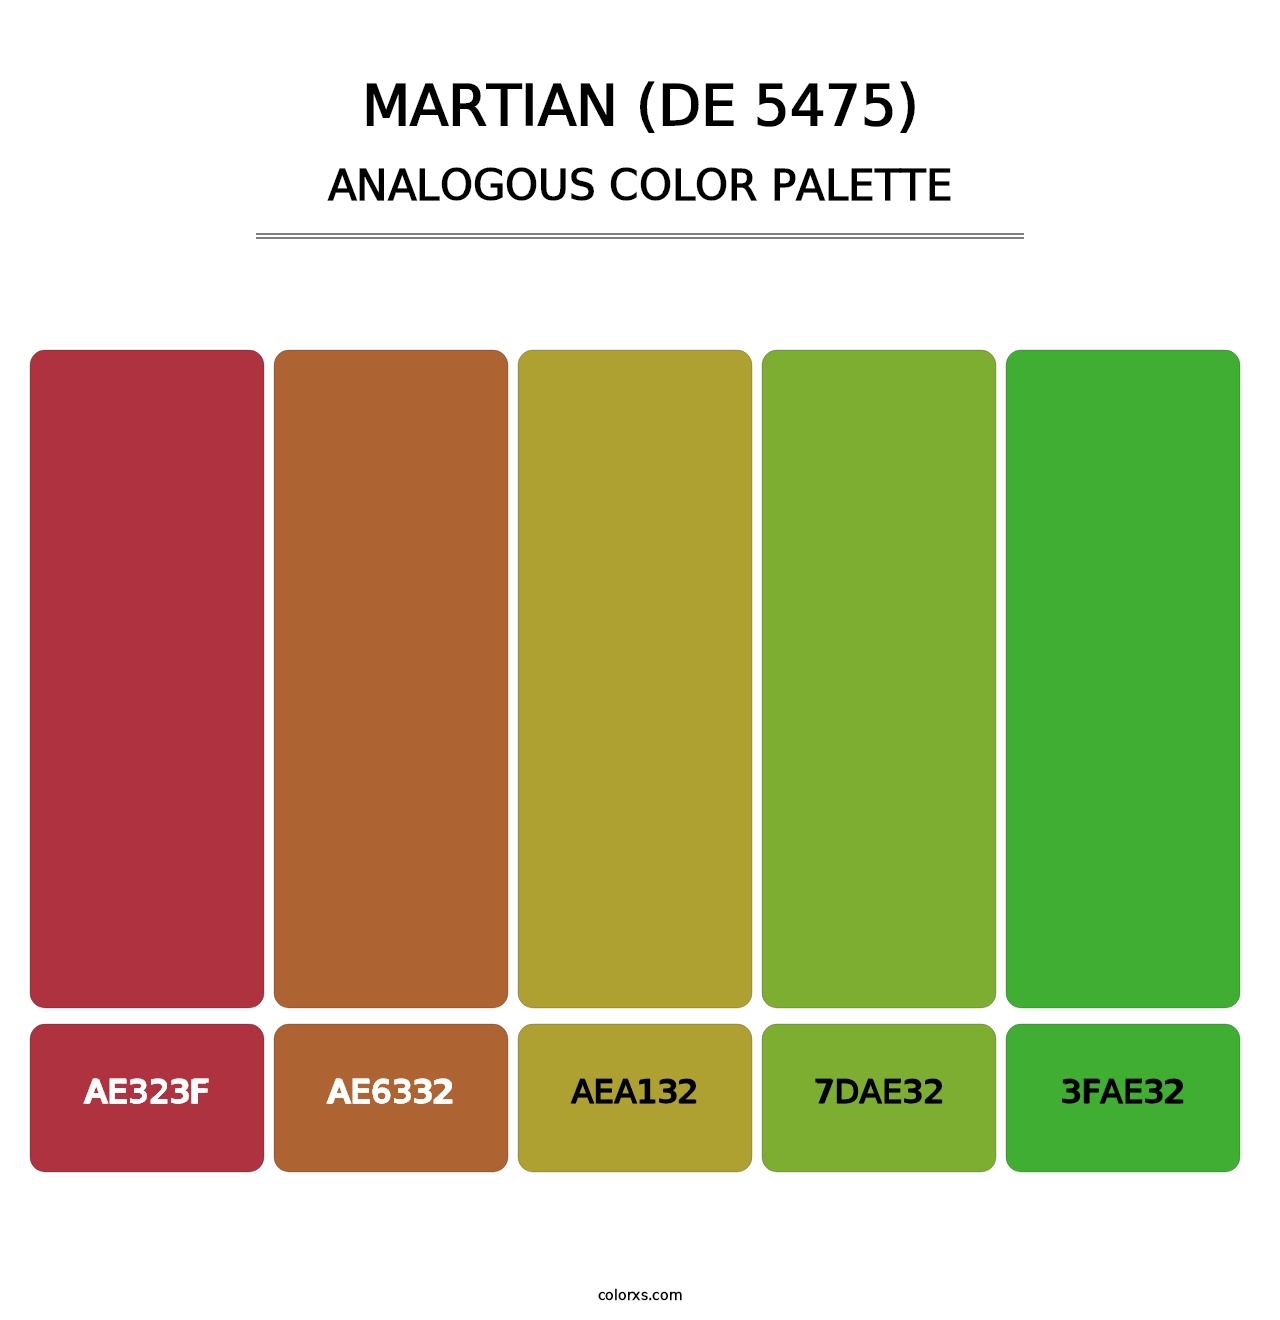 Martian (DE 5475) - Analogous Color Palette